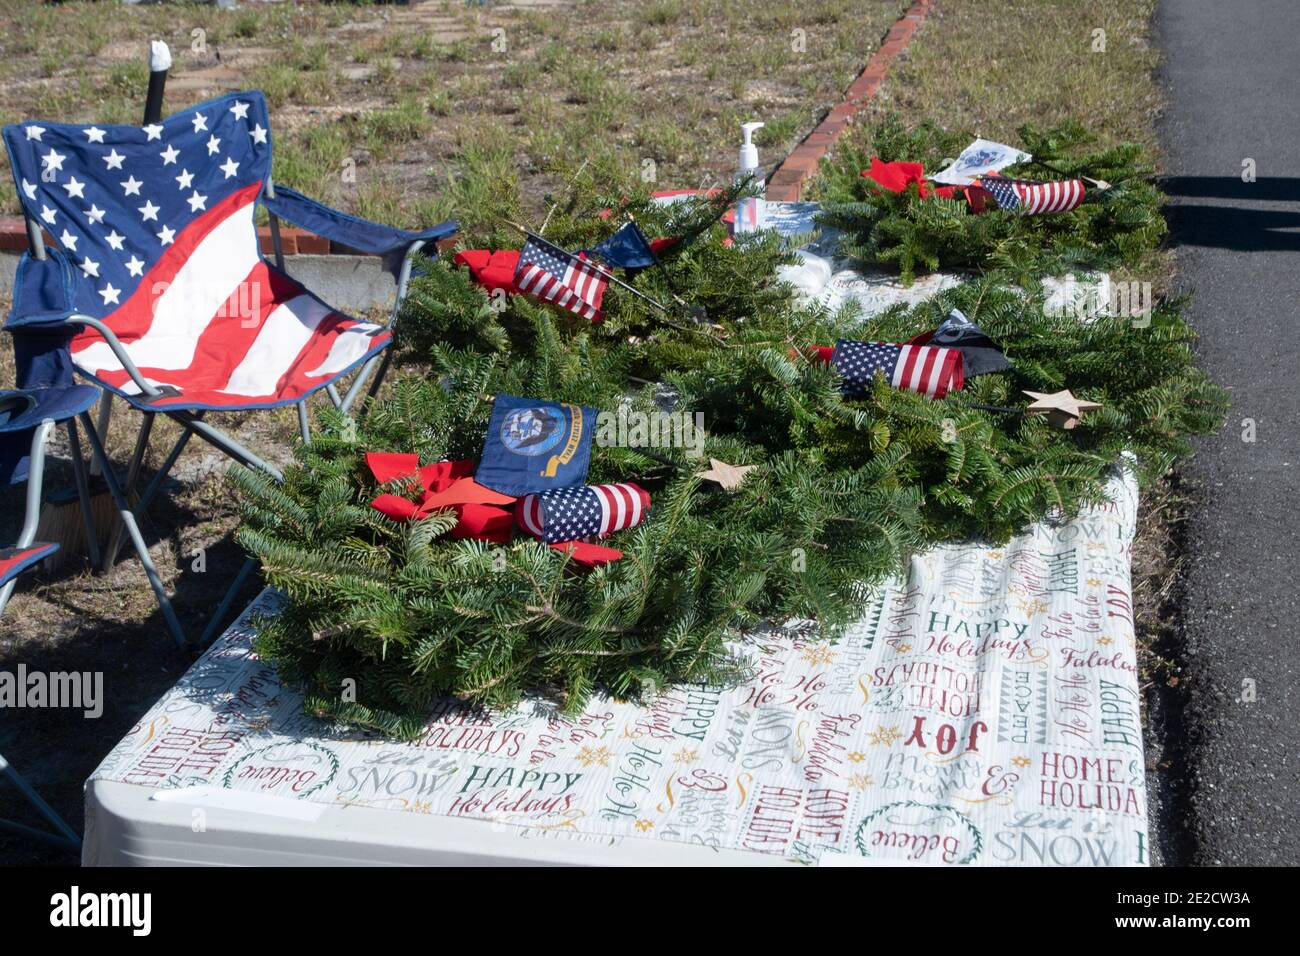 Las coronas se depositaron sobre una piedra durante las ceremonias de colocación de coronas como parte de las Wreaths Across America, recordando a los veteranos caídos. Foto de stock